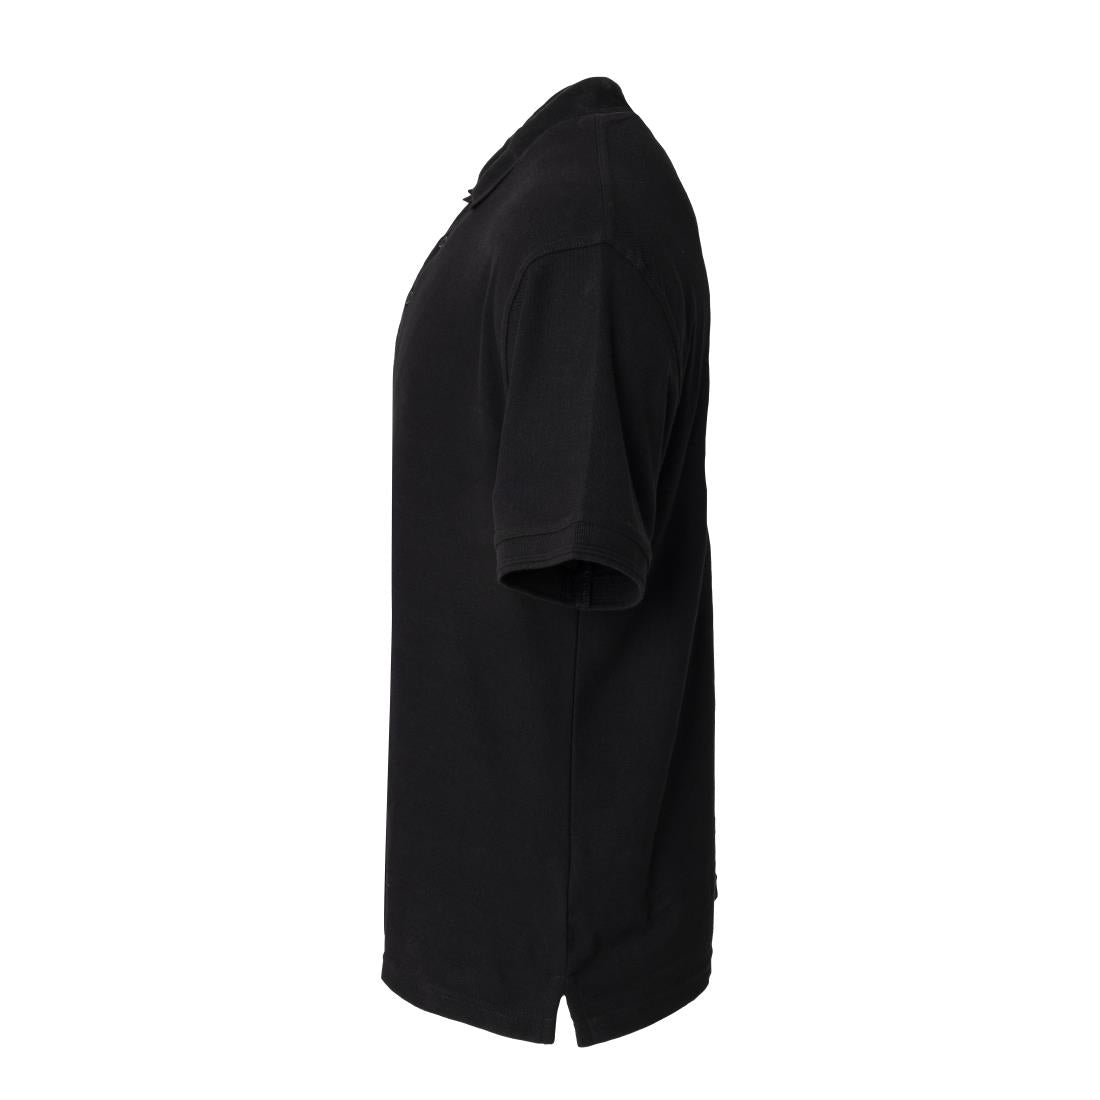 A735-M Portwest Unisex Polo Shirt Black M